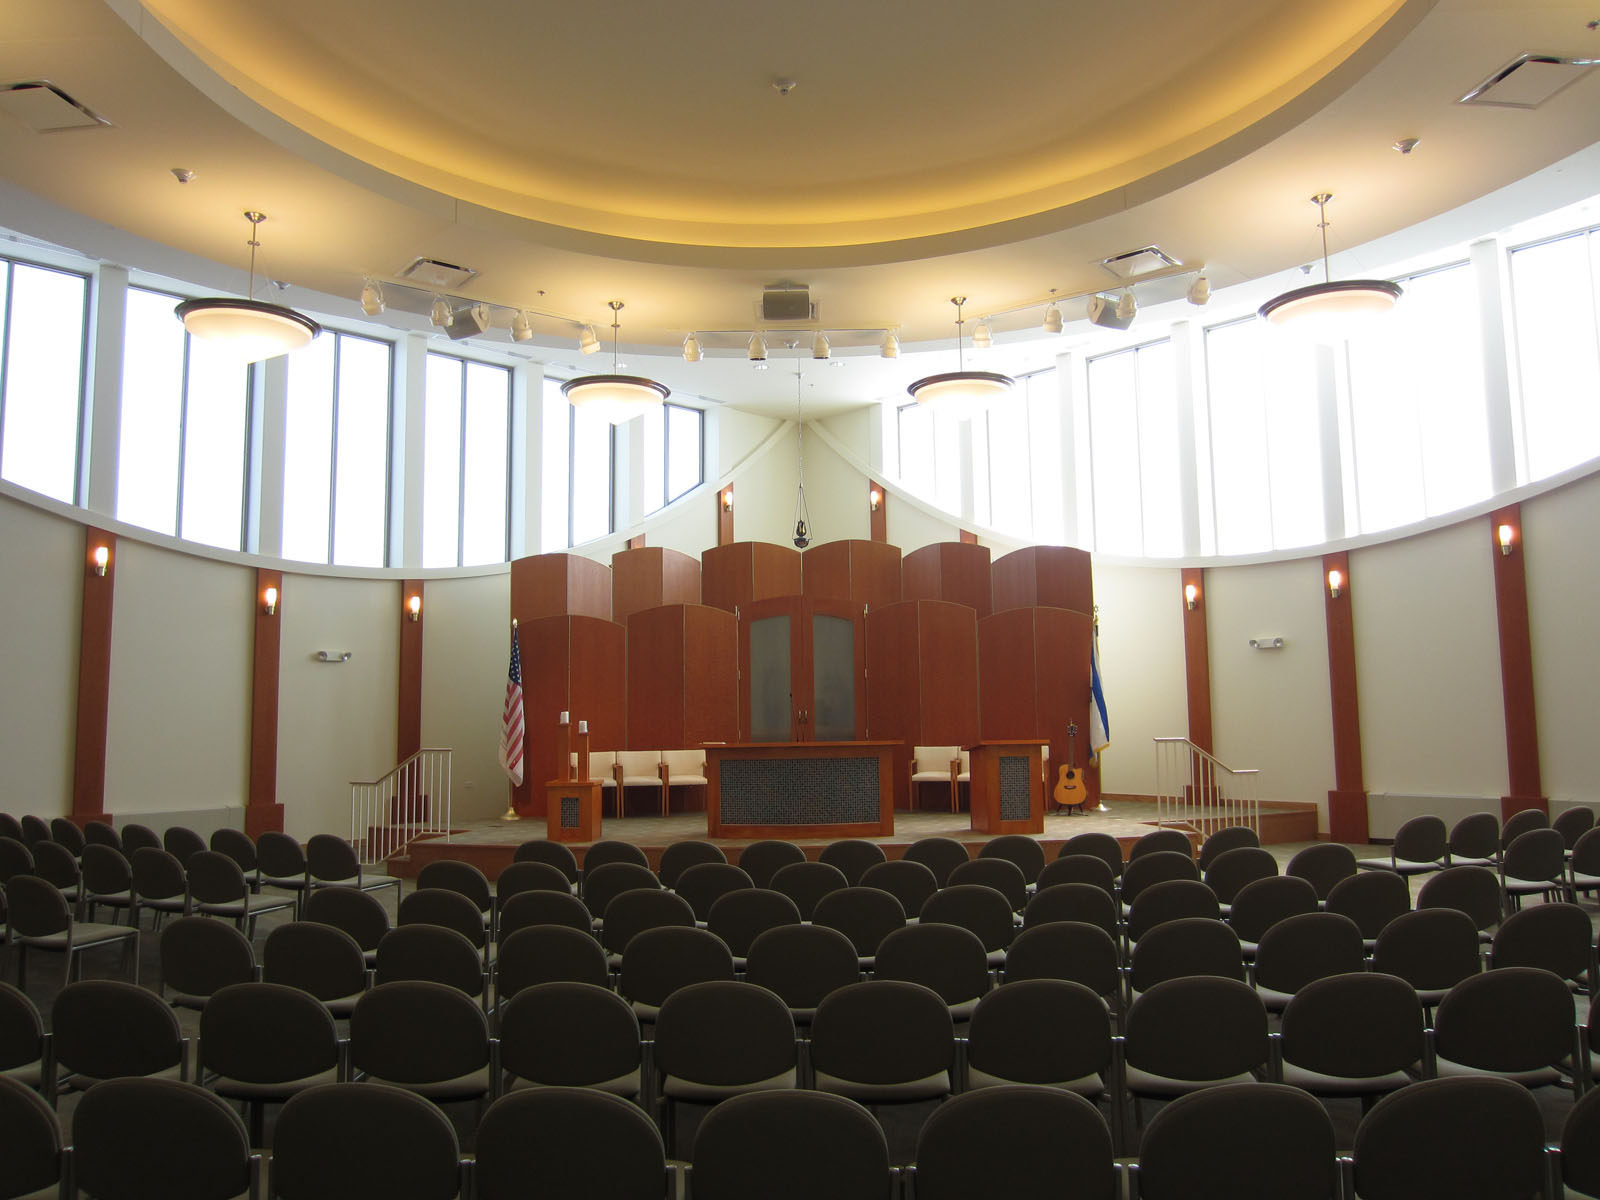 Chicago Religious Or Shalom Synagogue Interior